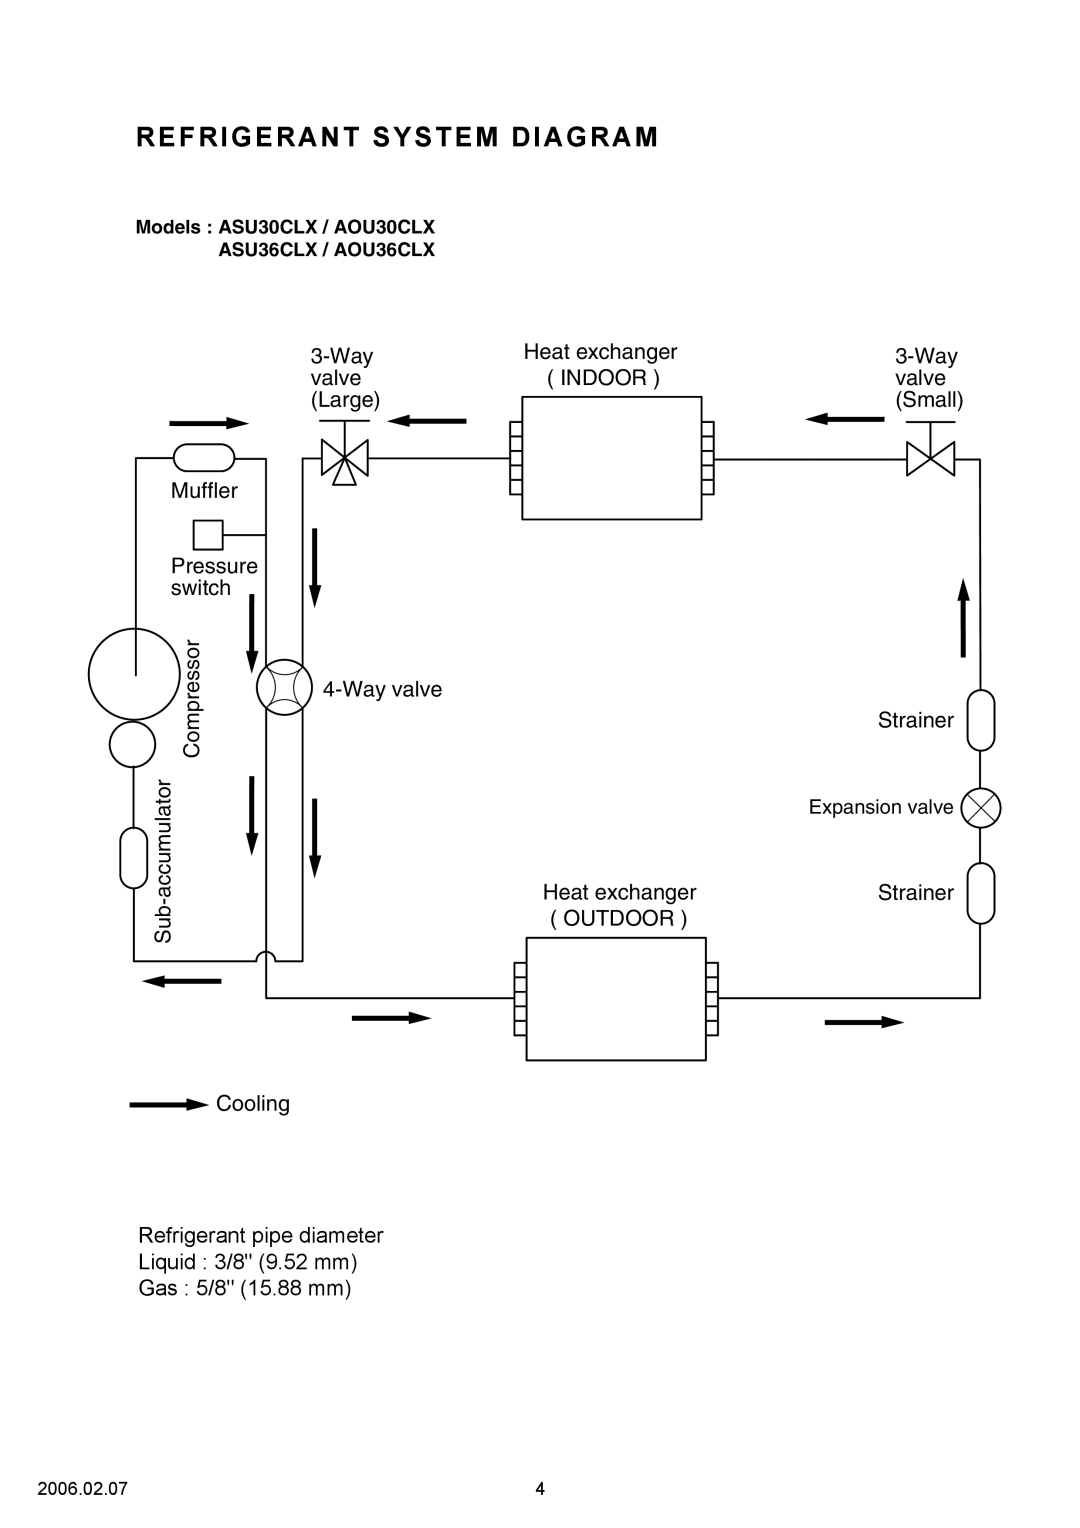 Fujitsu ASU30CLX, ASU36CLX, AOU36CLX, AOU30CLX specifications Refrigerant System Diagram 